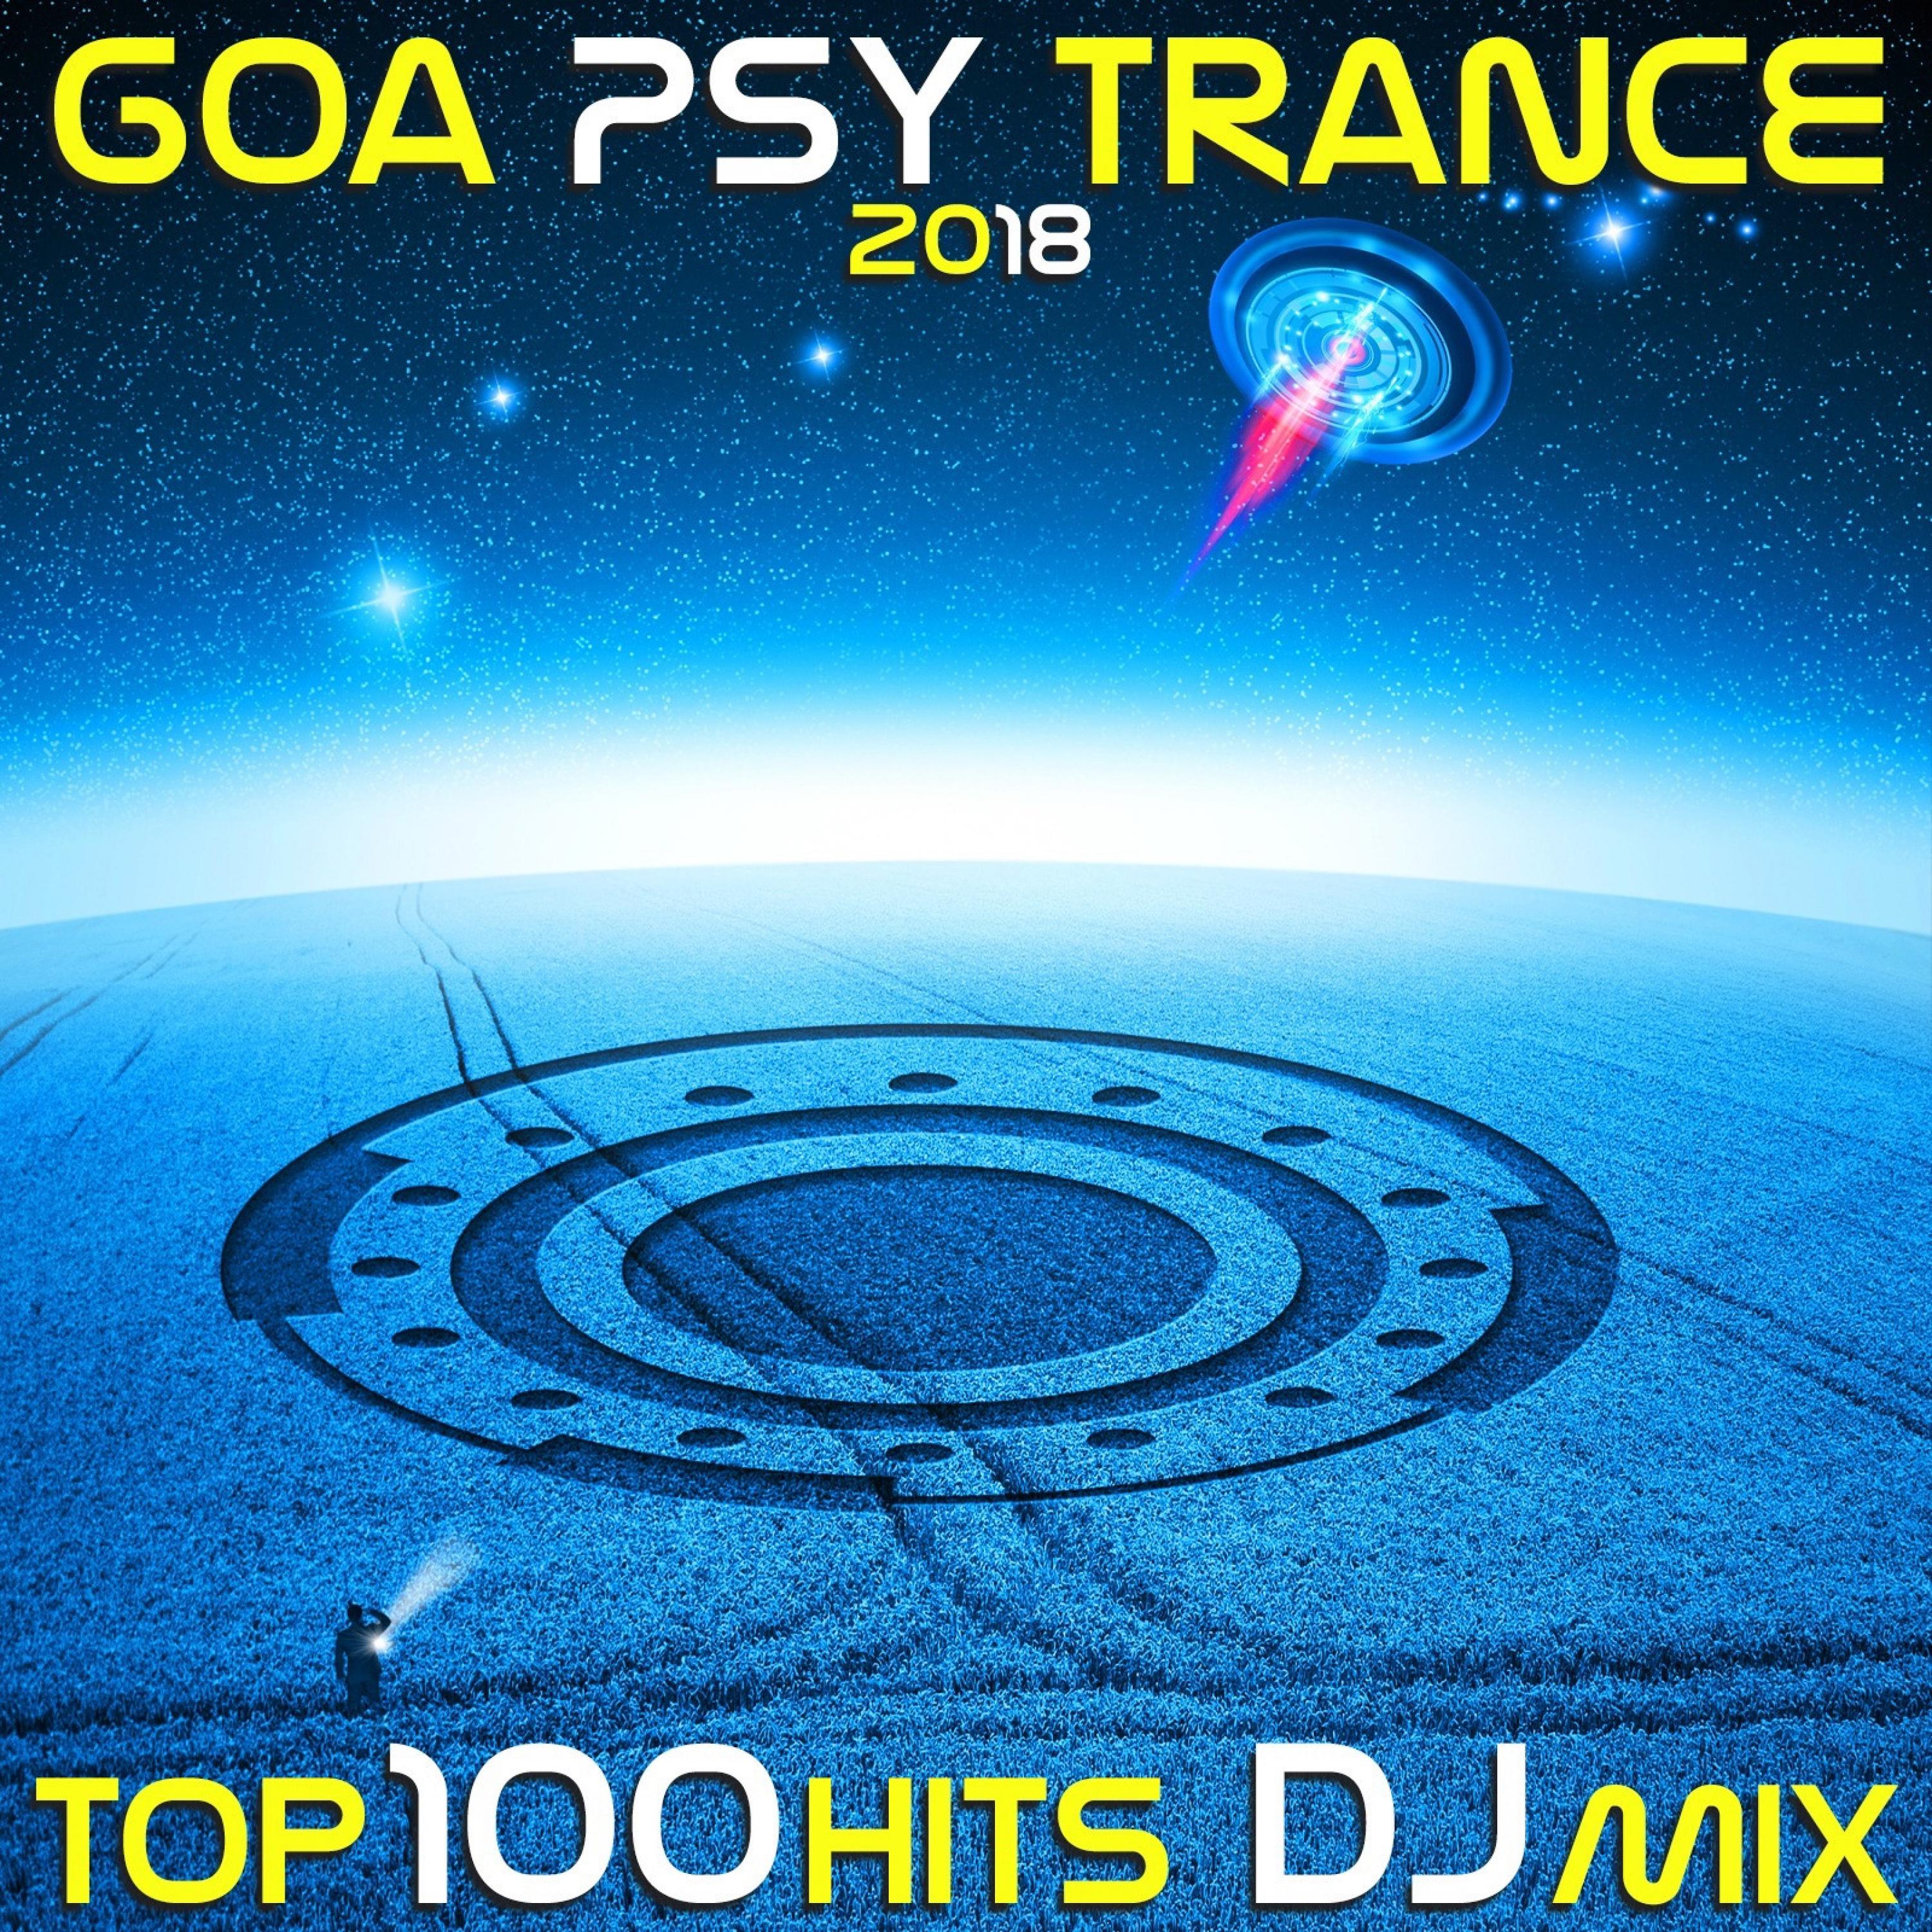 Deedrah - Mr Nemmeth (Goa Psy Trance 2018 Top 100 Hits DJ Mix Edit)